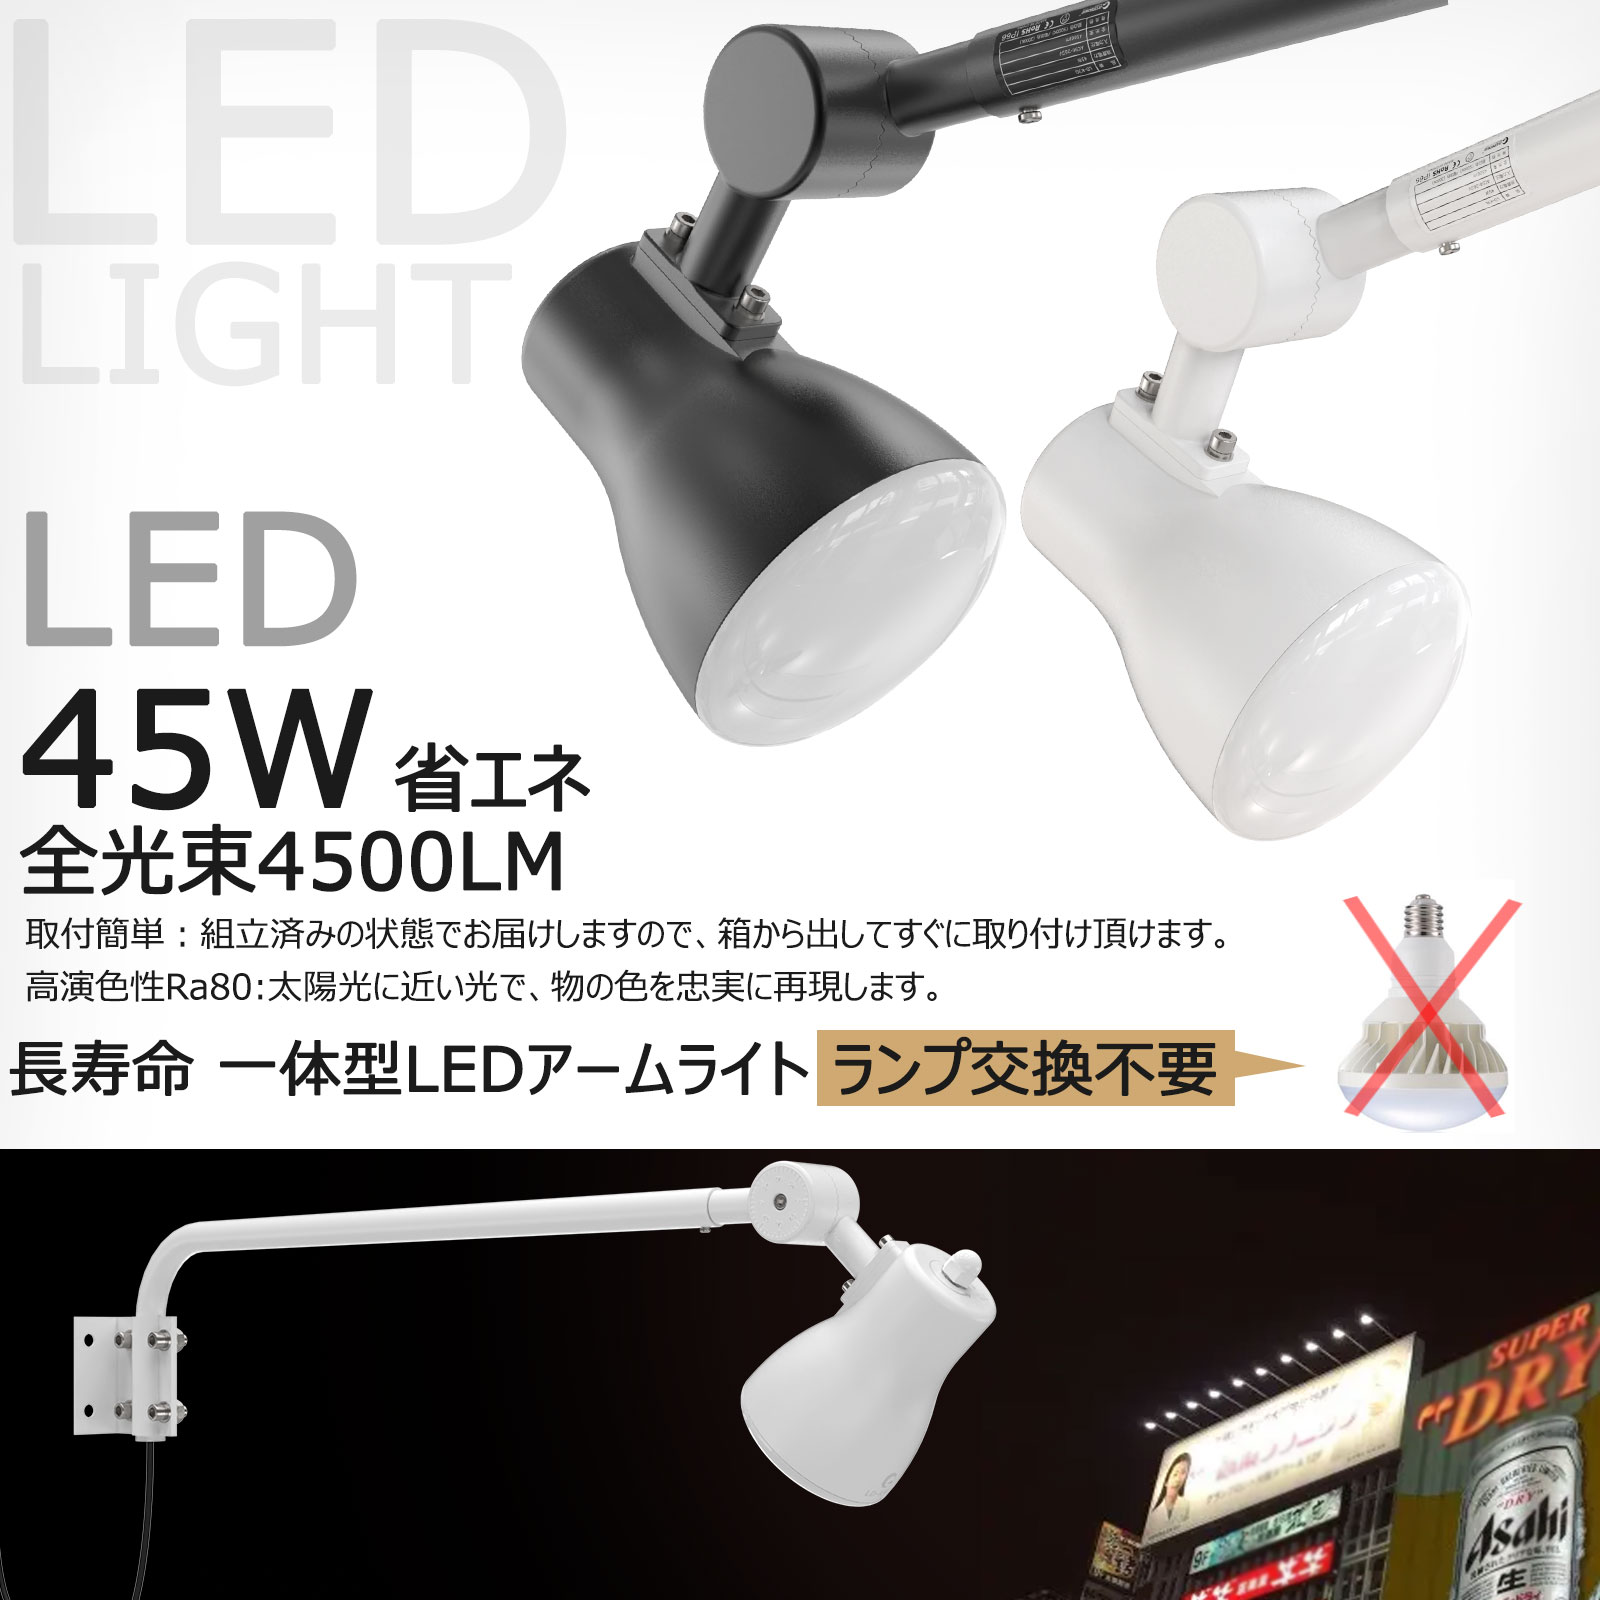 グッドグッズ(GOODGOODS) 看板照明 サイン広告用照明器具 LEDアームライト 45W 電球色/昼白色調色可能 アウトドア用 4500LM  広角 黒/白 LD-K3G/LD-K9L